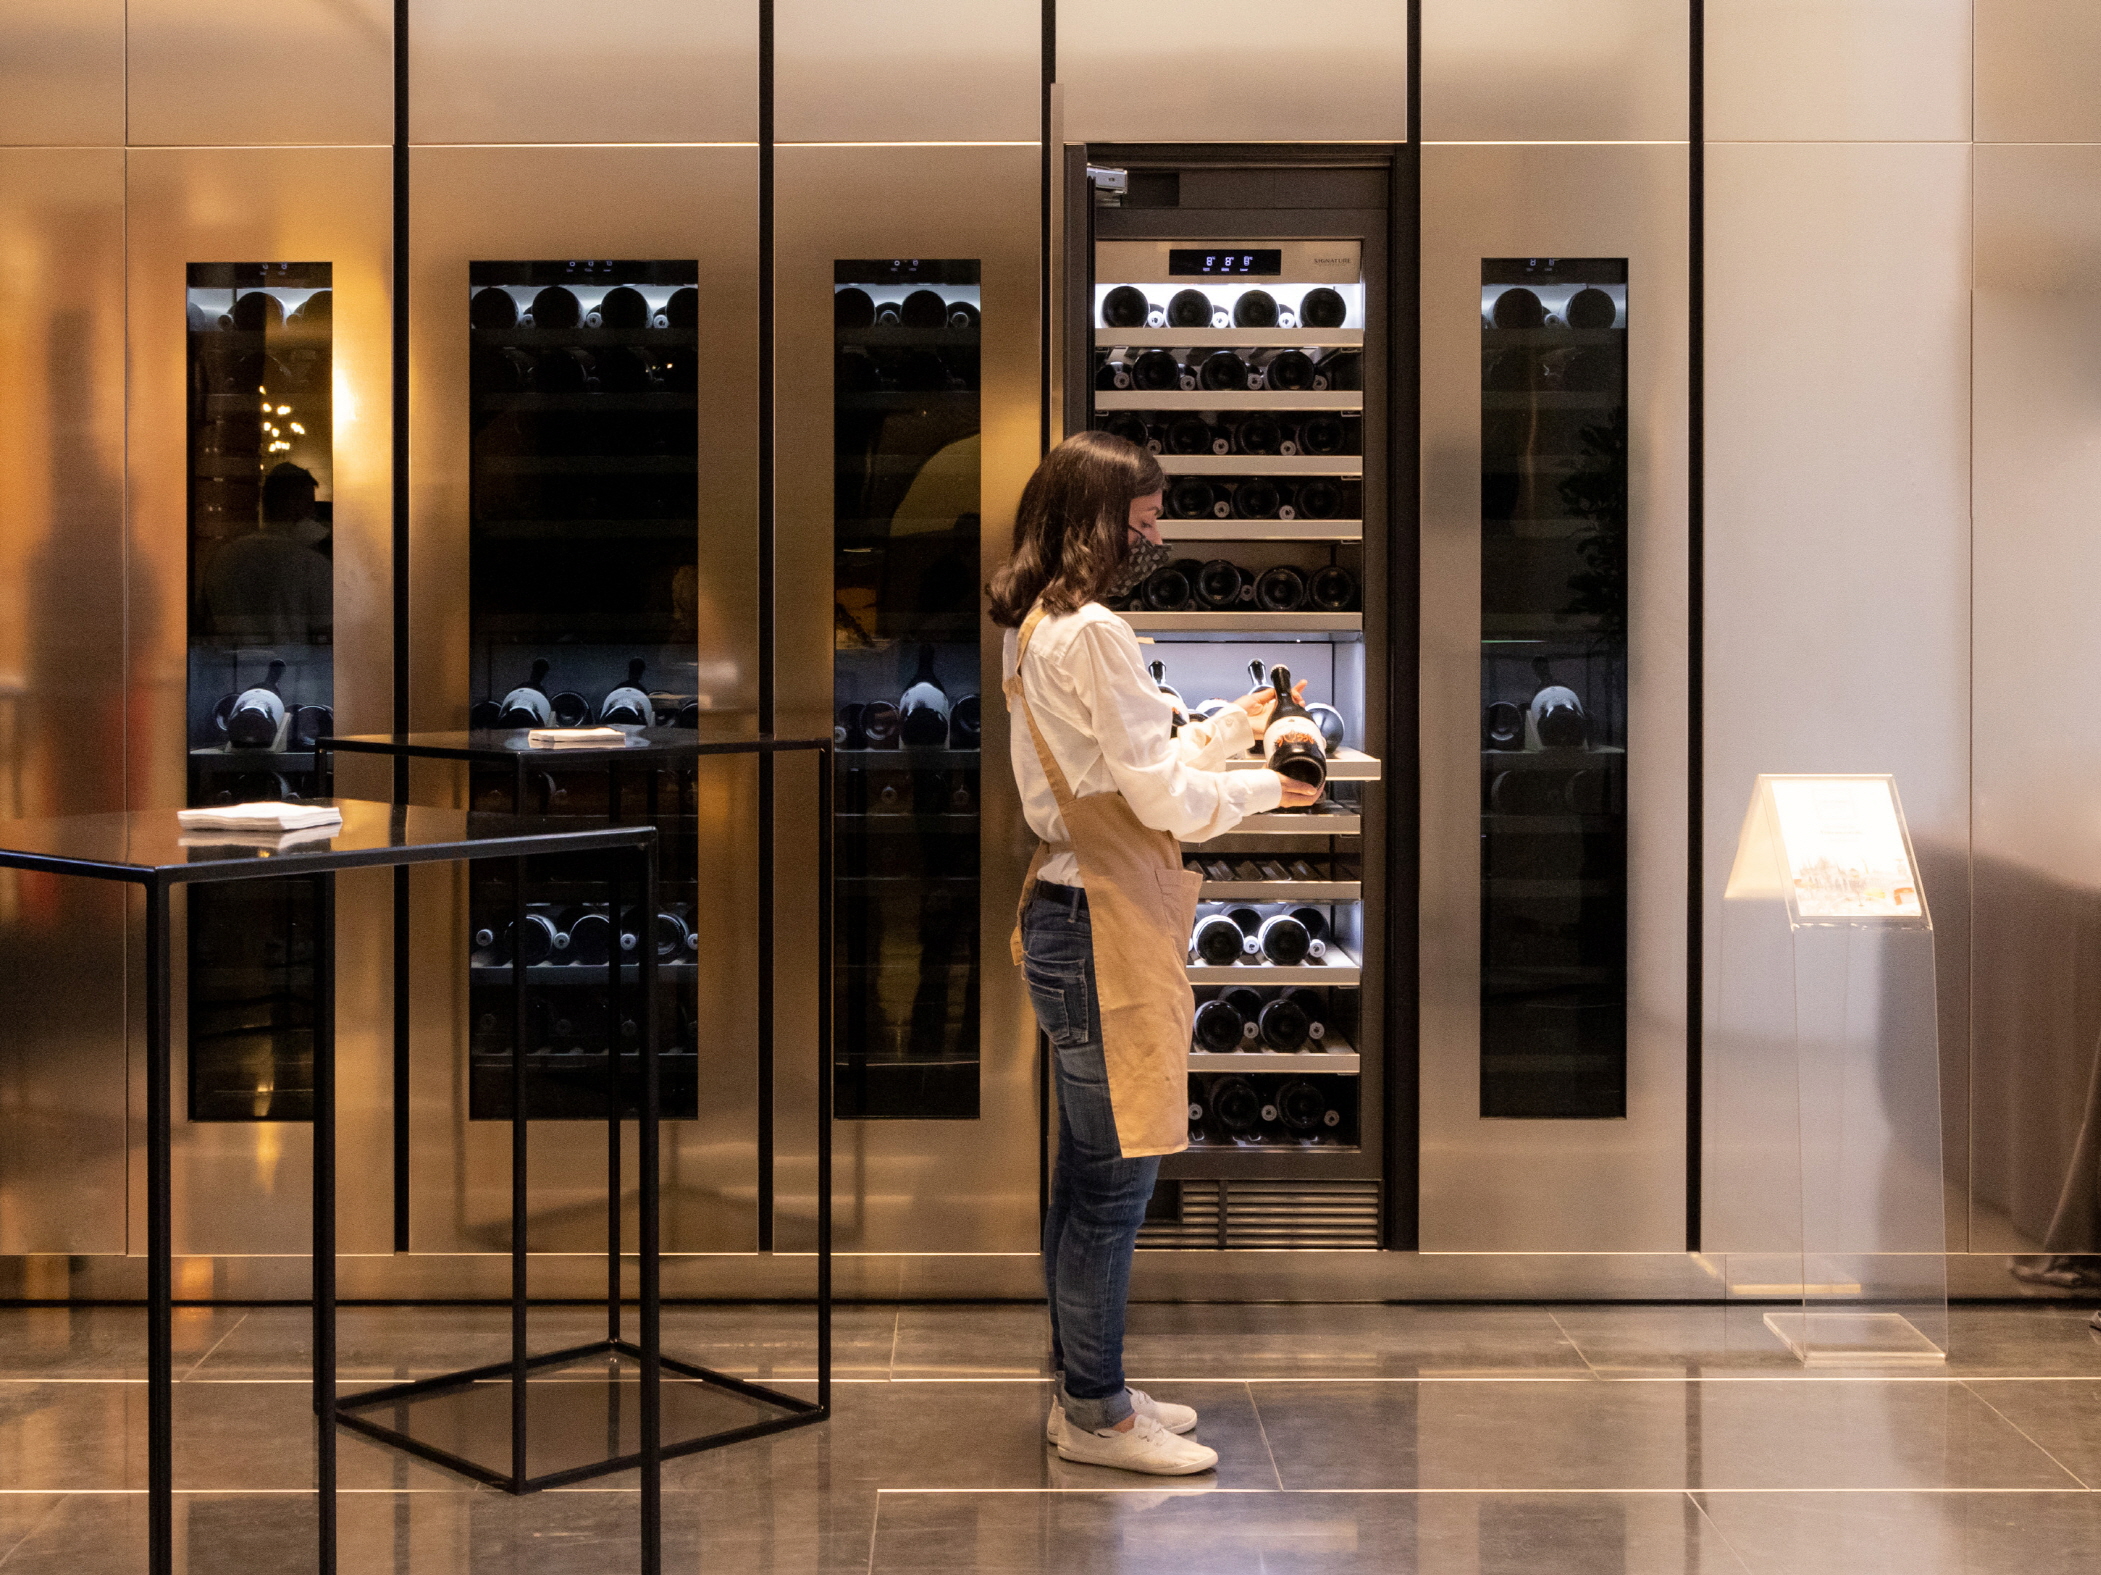 Signature Kitchen Suite انبارهای شراب ستونی 18 و 24 اینچی در نمایشگاه Signature Kitchen Suite در Piazza Cavour، میلان، ایتالیا به نمایش گذاشته شده است.